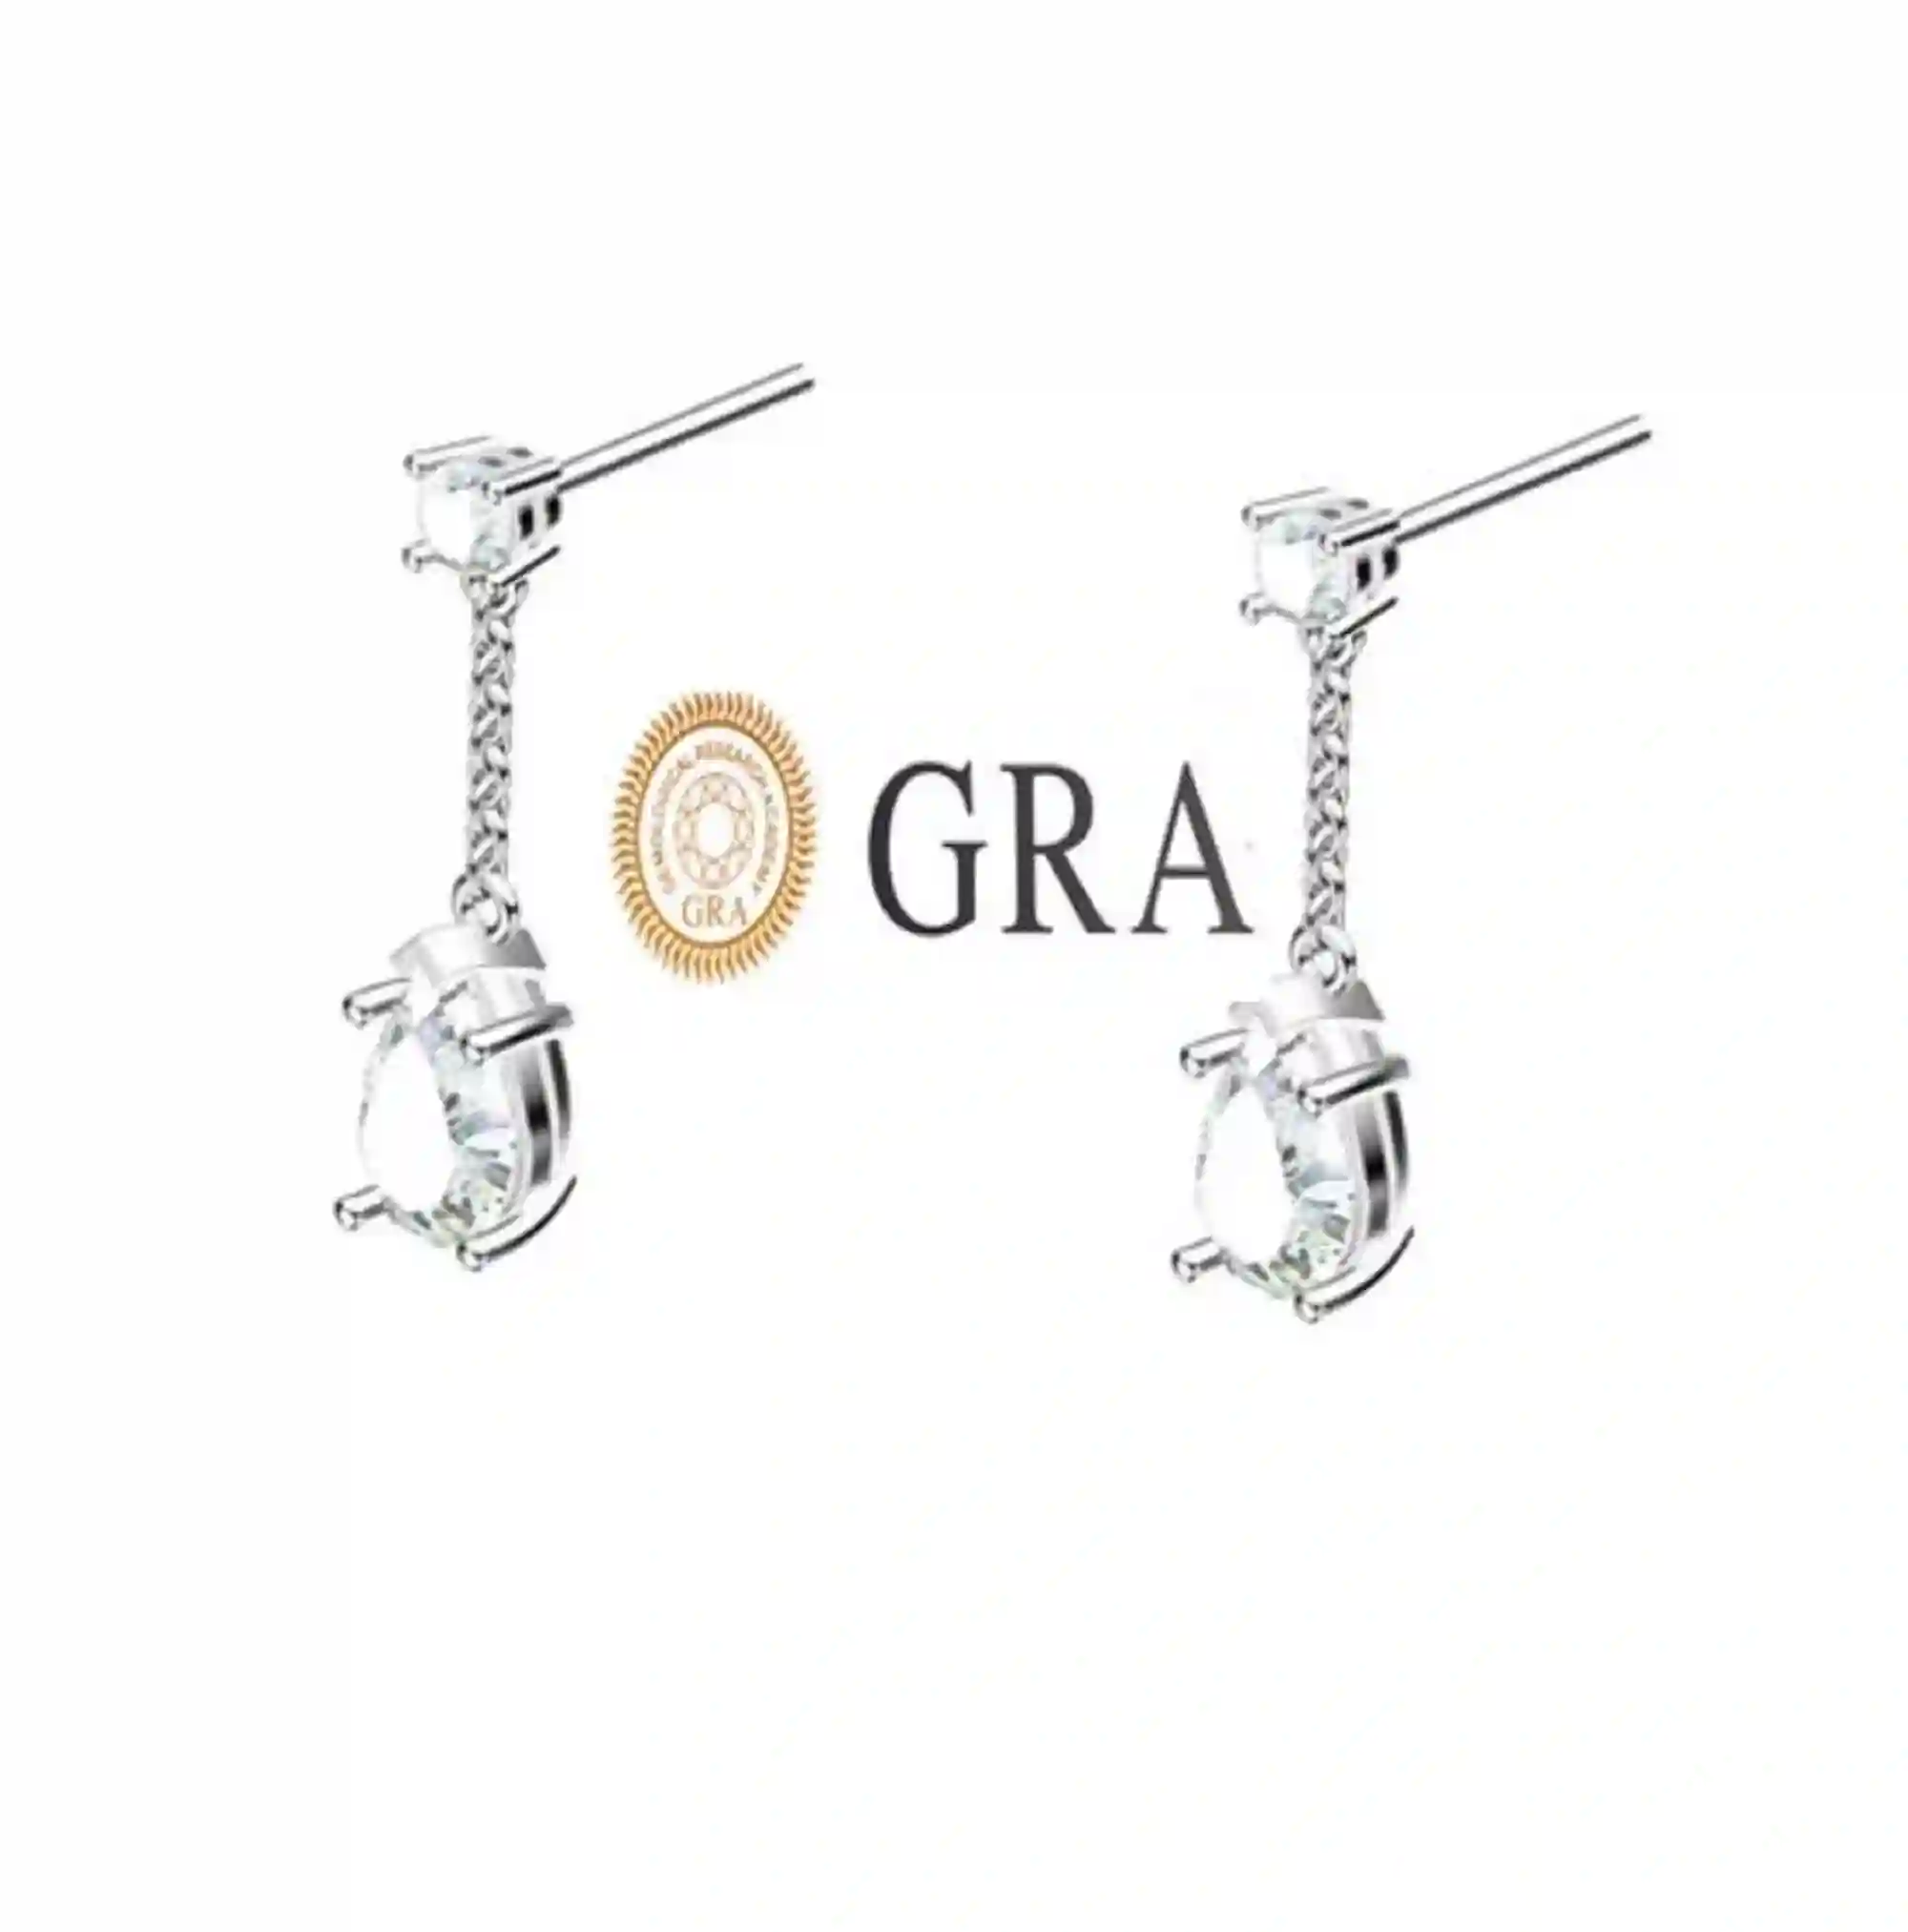 2 ctw Diamond Earrings Solid 18k White GOLD Tear Drop Earrings Pear shaped Diamond Dangle Earrings Wedding Earrings Diamond Bridal Jewelry 